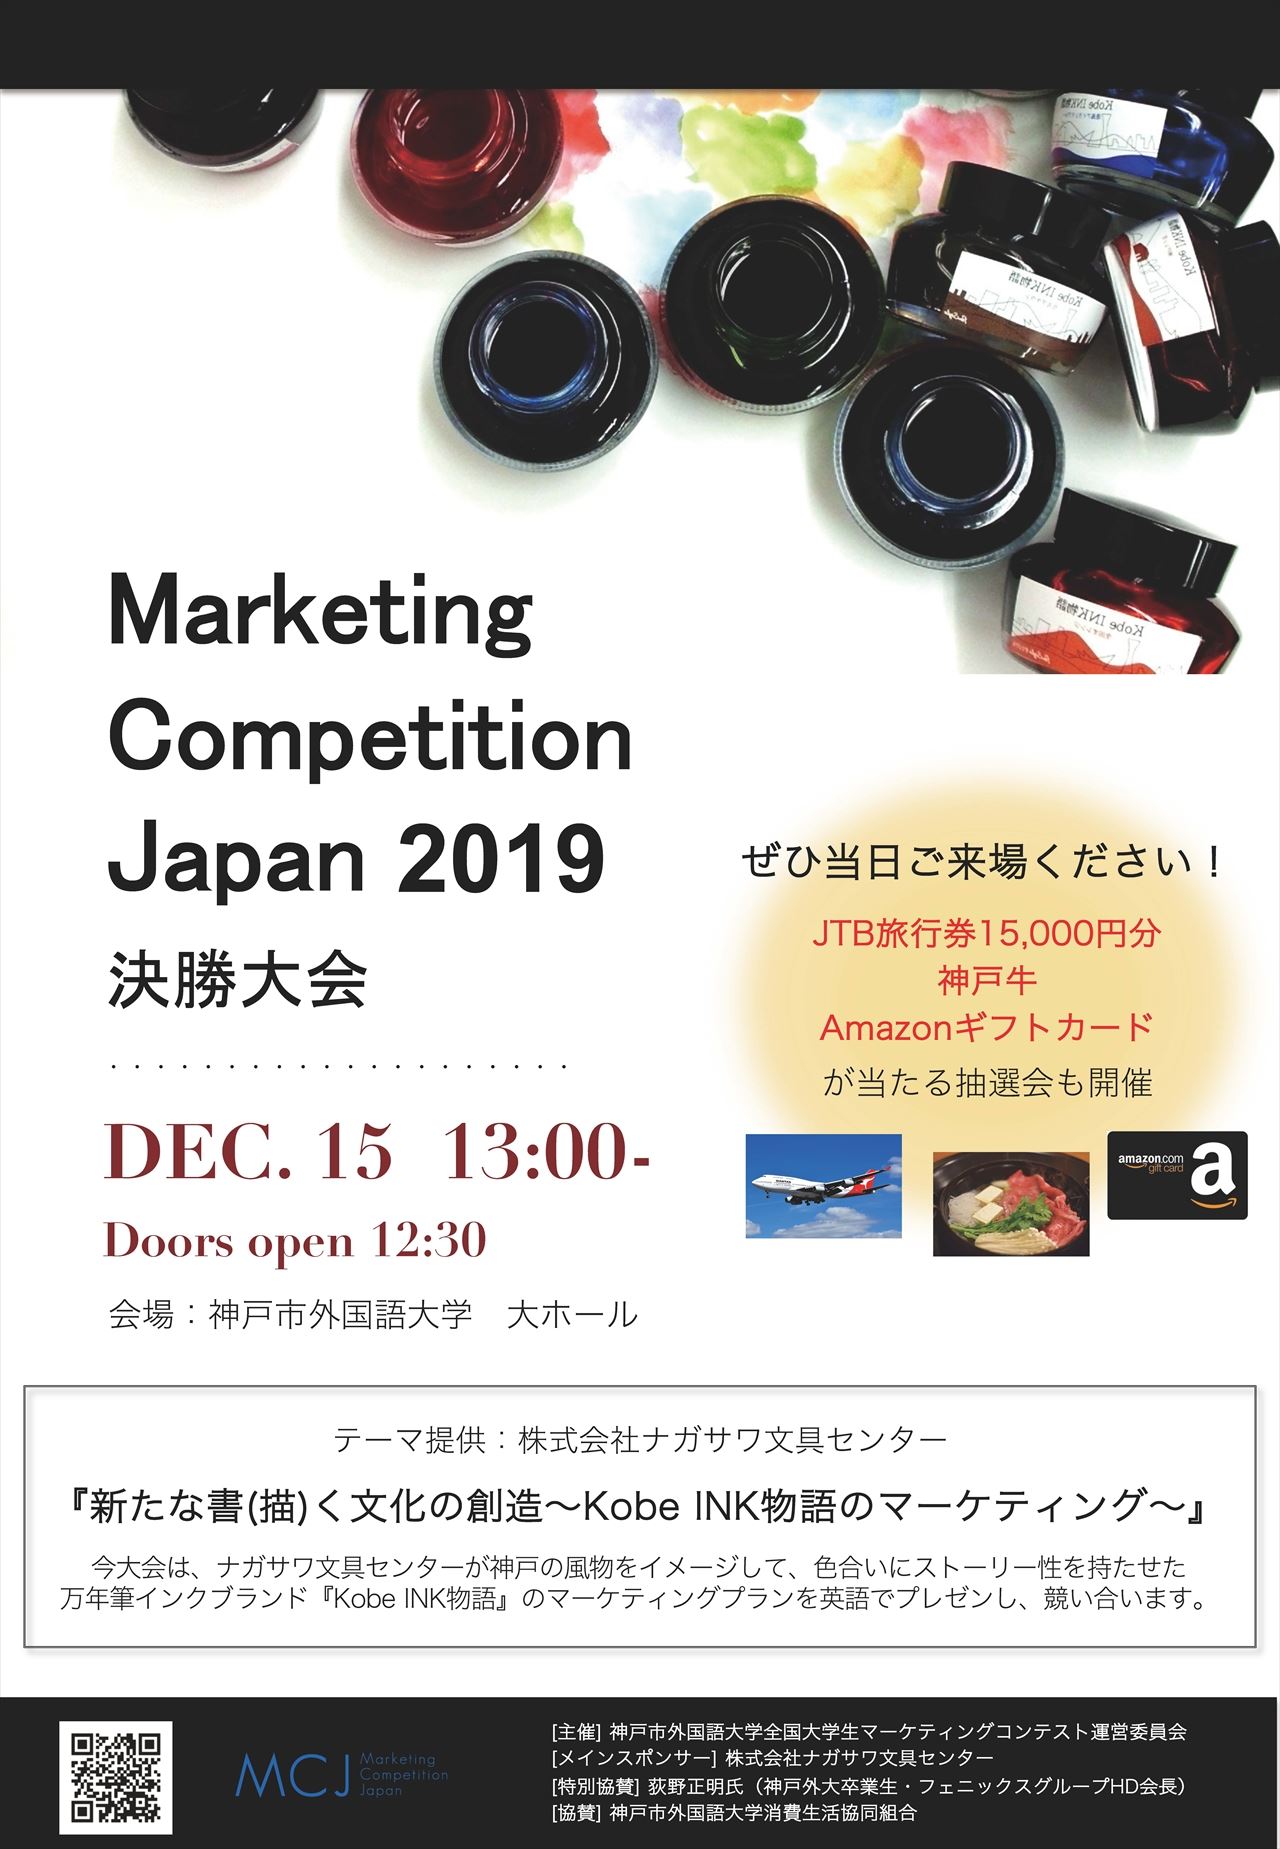 いよいよ今度の日曜日開催！！5大学8チームによる英語でのプレゼンテーションコンテスト！Kobe INK物語がテーマです。